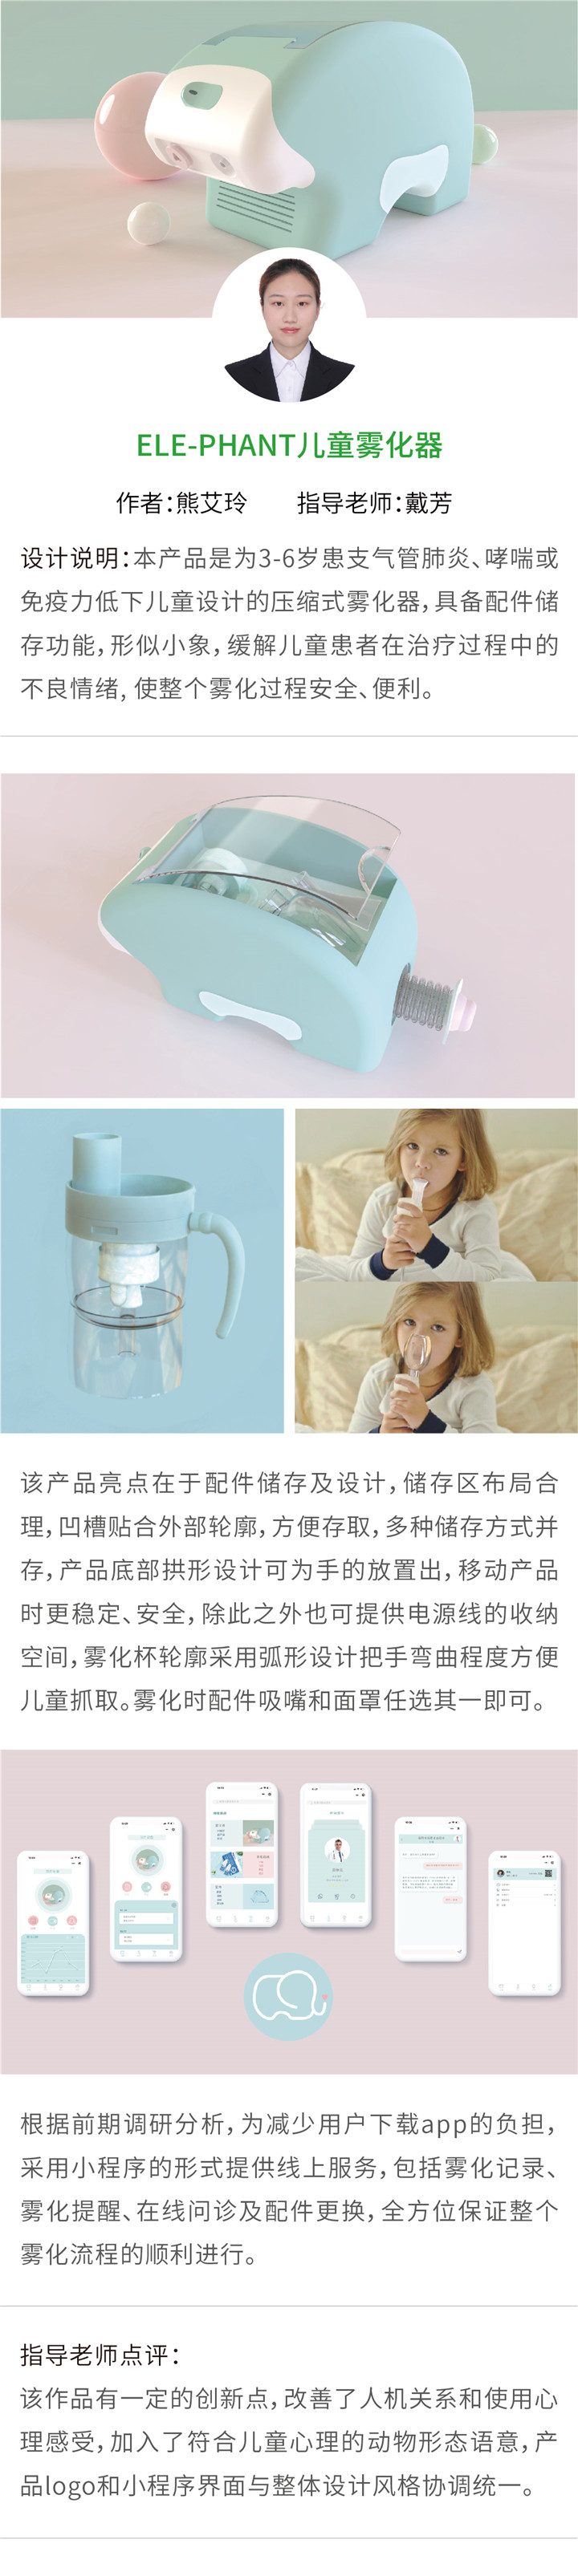 工业设计——ELE-PHANT儿童雾化器-设计中国